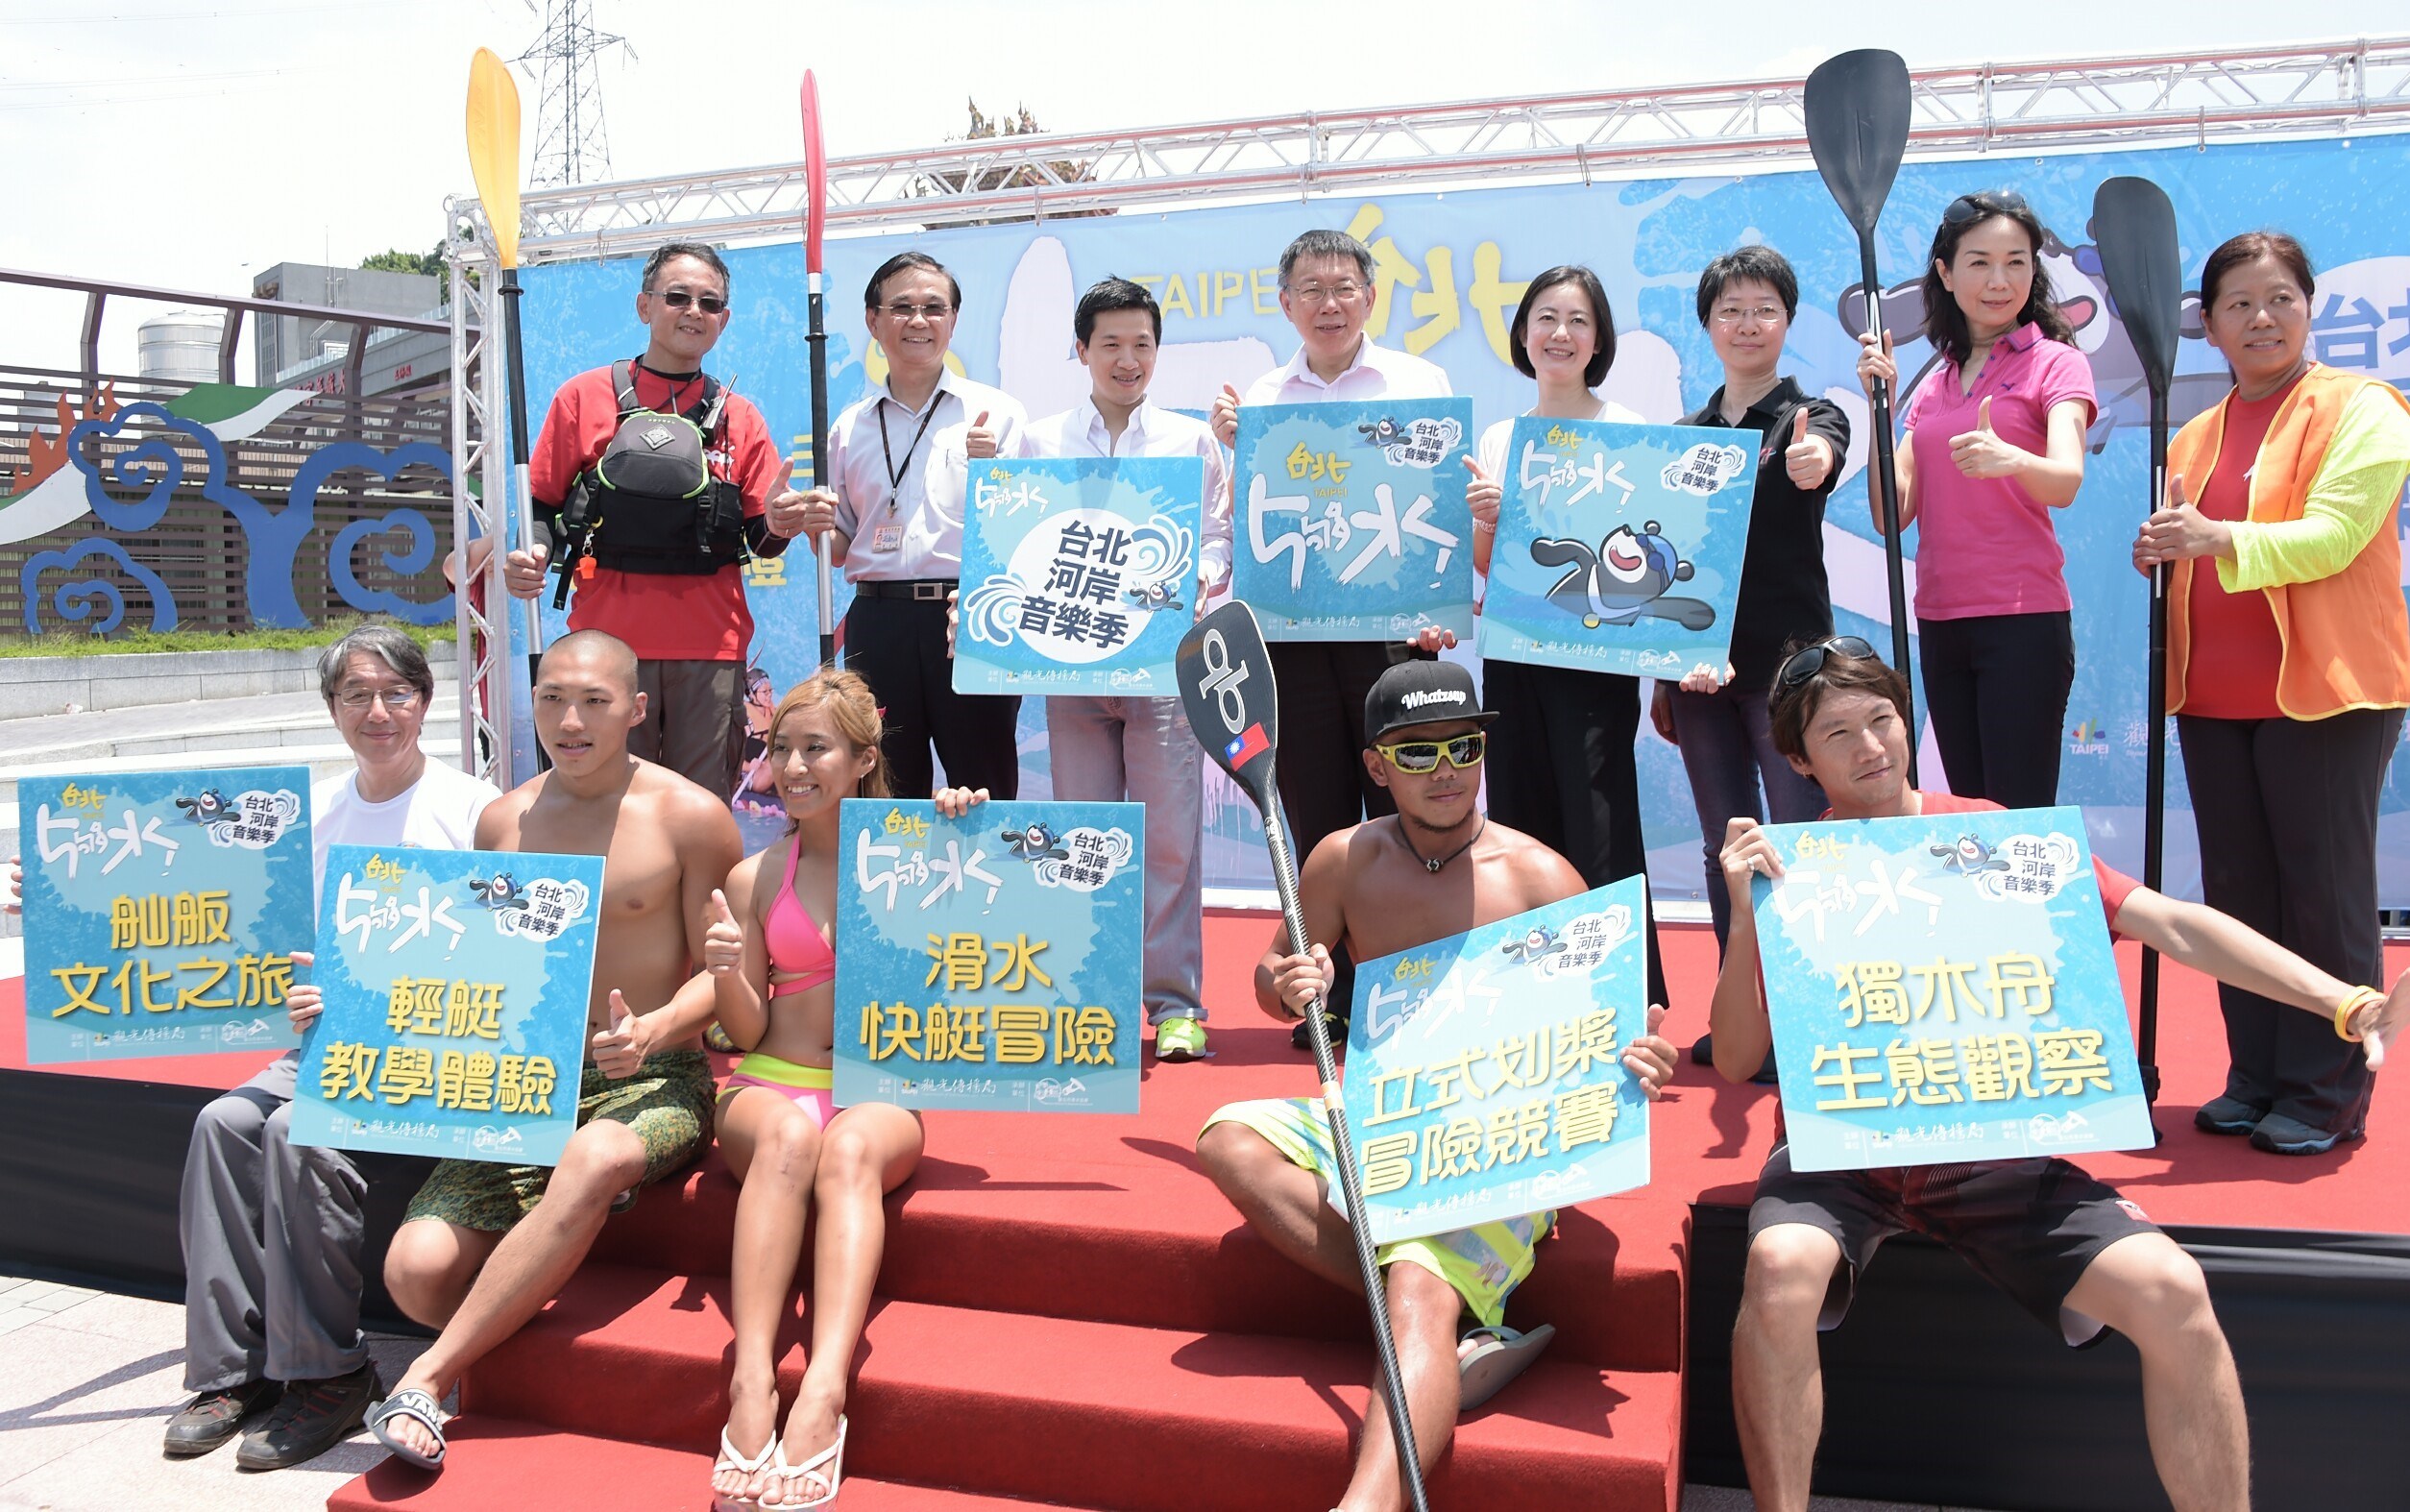 臺北市長柯文哲及各項協會代表共同邀請市民參與2016台北河岸音樂季-台北5夠水活動